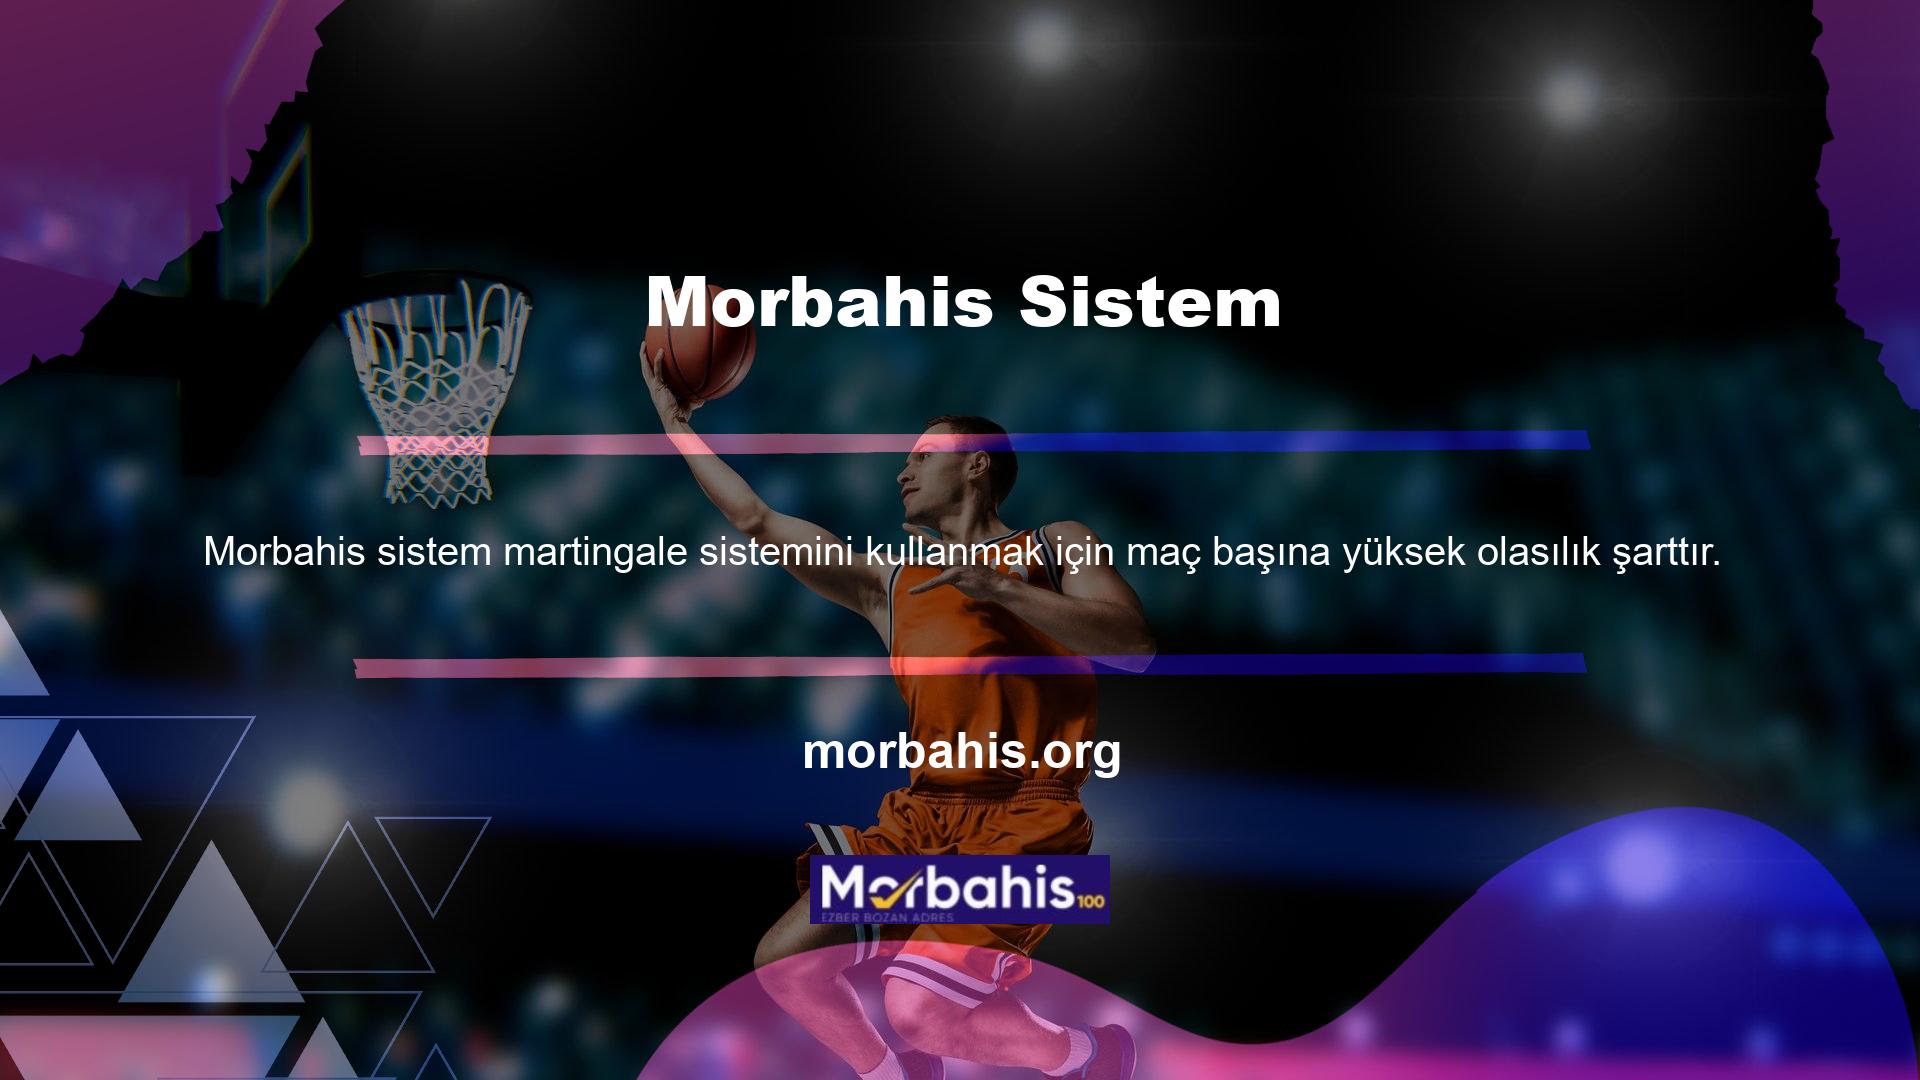 Verilerimizin anlaşılır olması gerekiyor, Morbahis sitesi ise onu kullanan oyuncular için tehlike altında değil